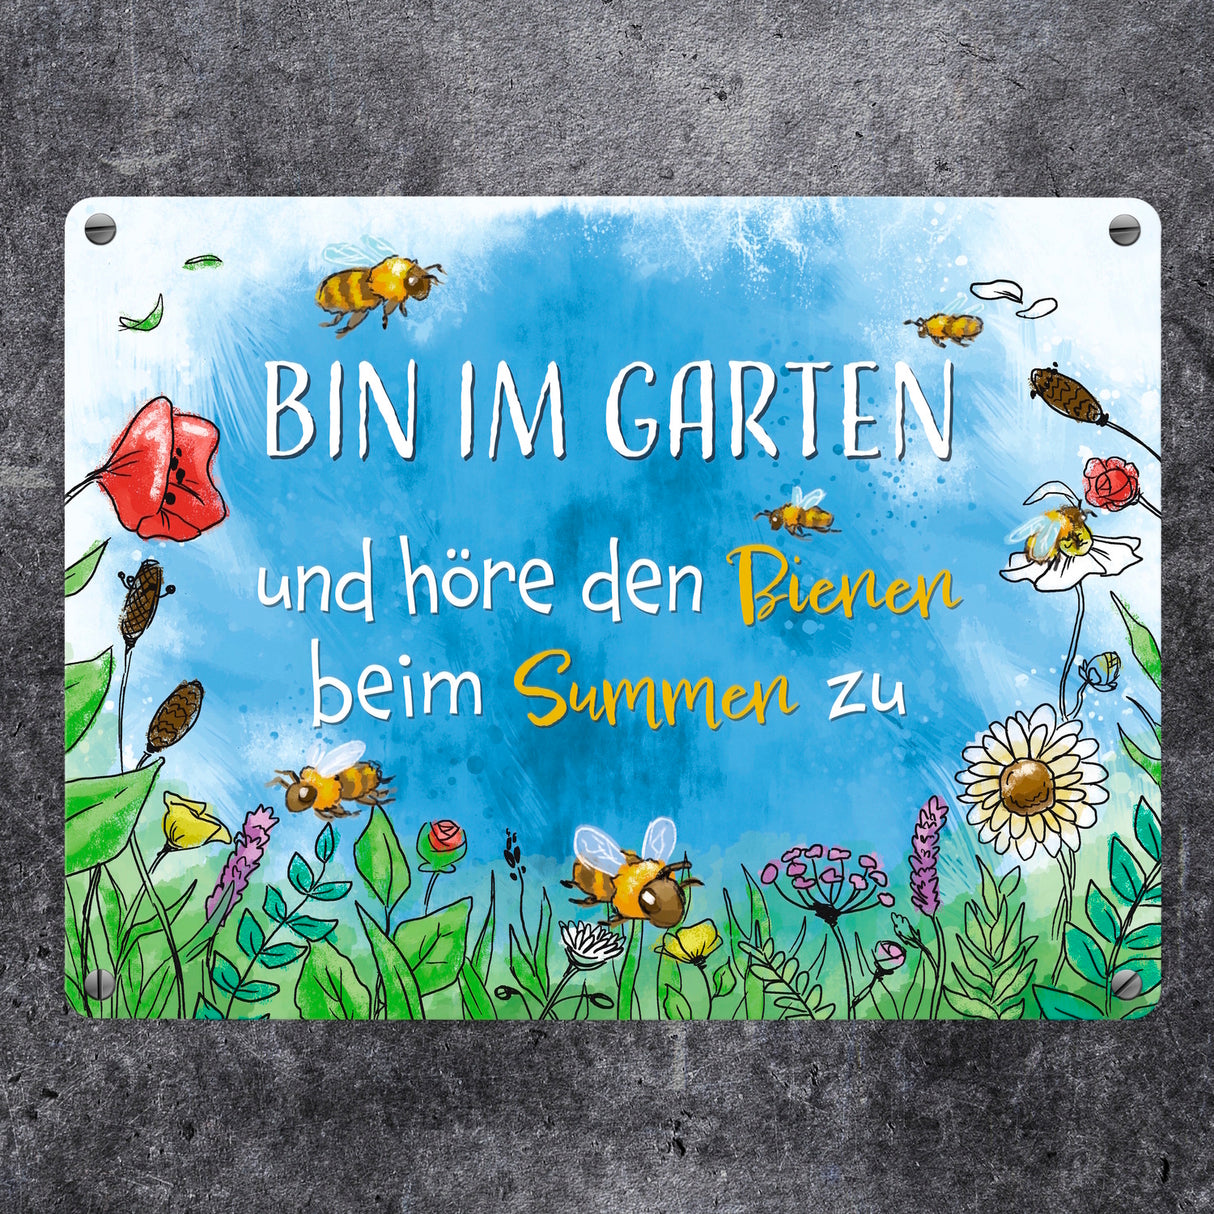 Bin im Garten Metallschild in 15x20 cm mit Blumenwiese und Bienen